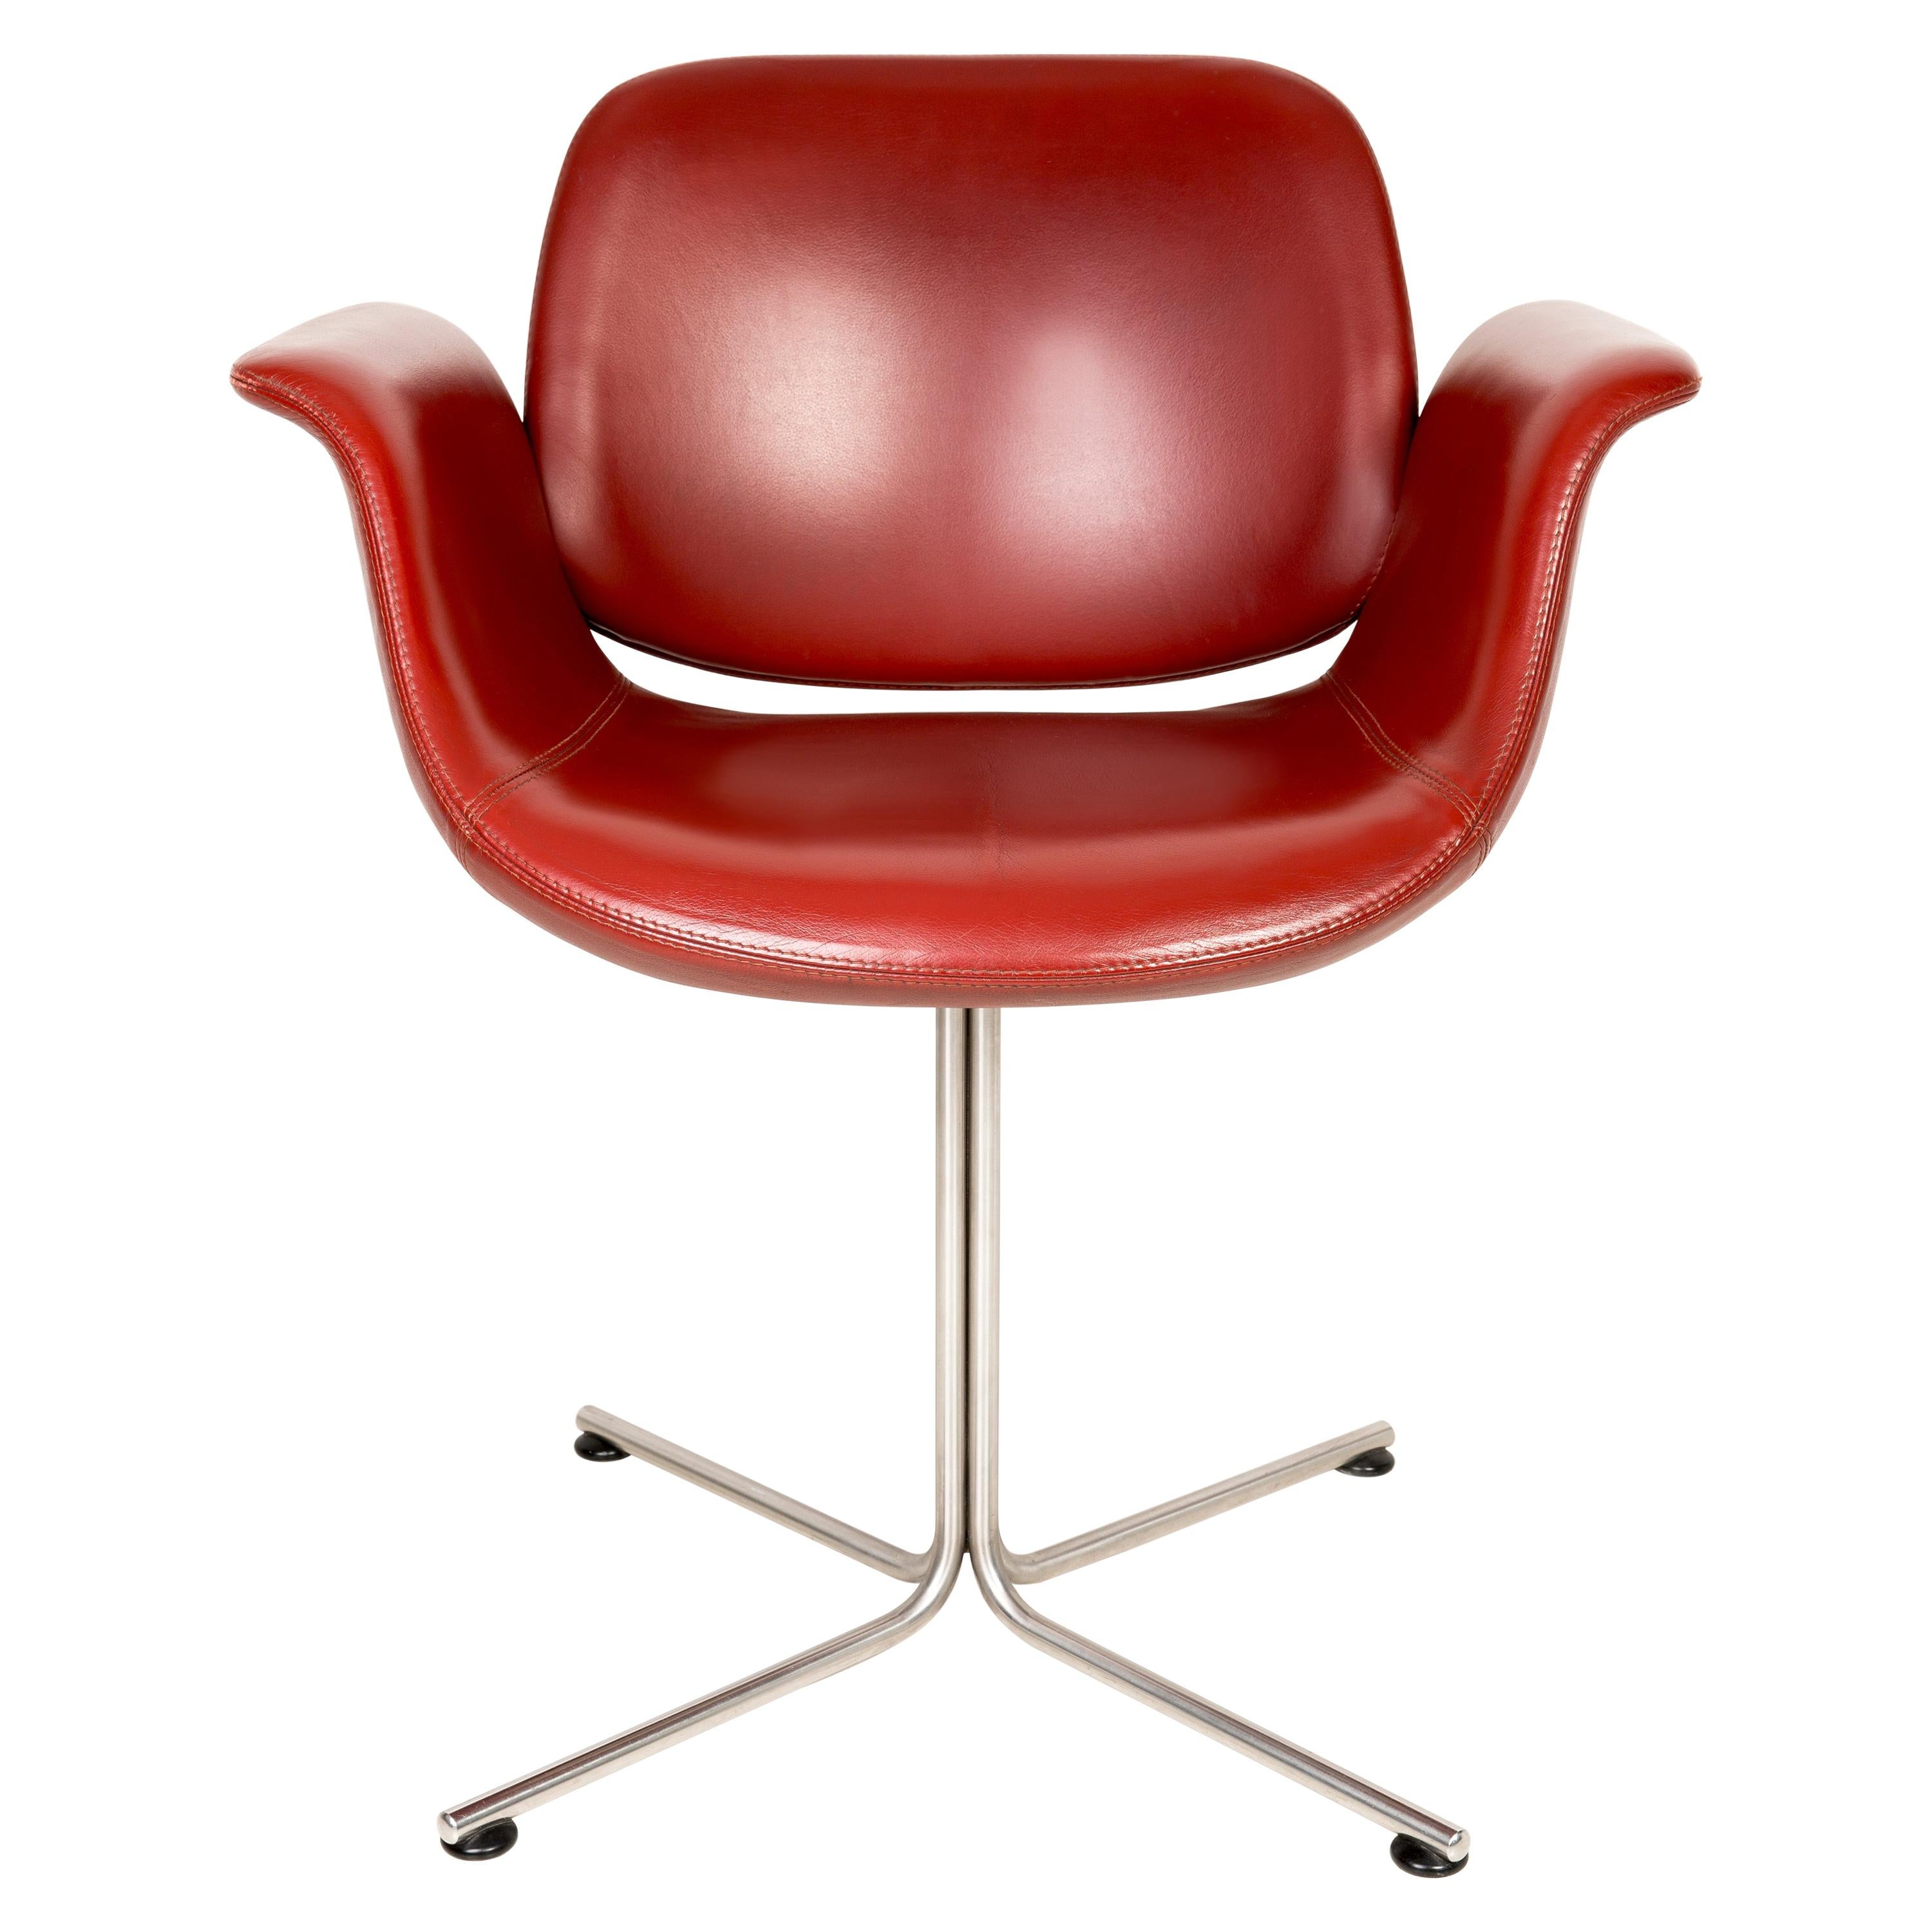 Unique Flamingo Chair, Red Leather, Erik Jørgensen, 2000s, Denmark